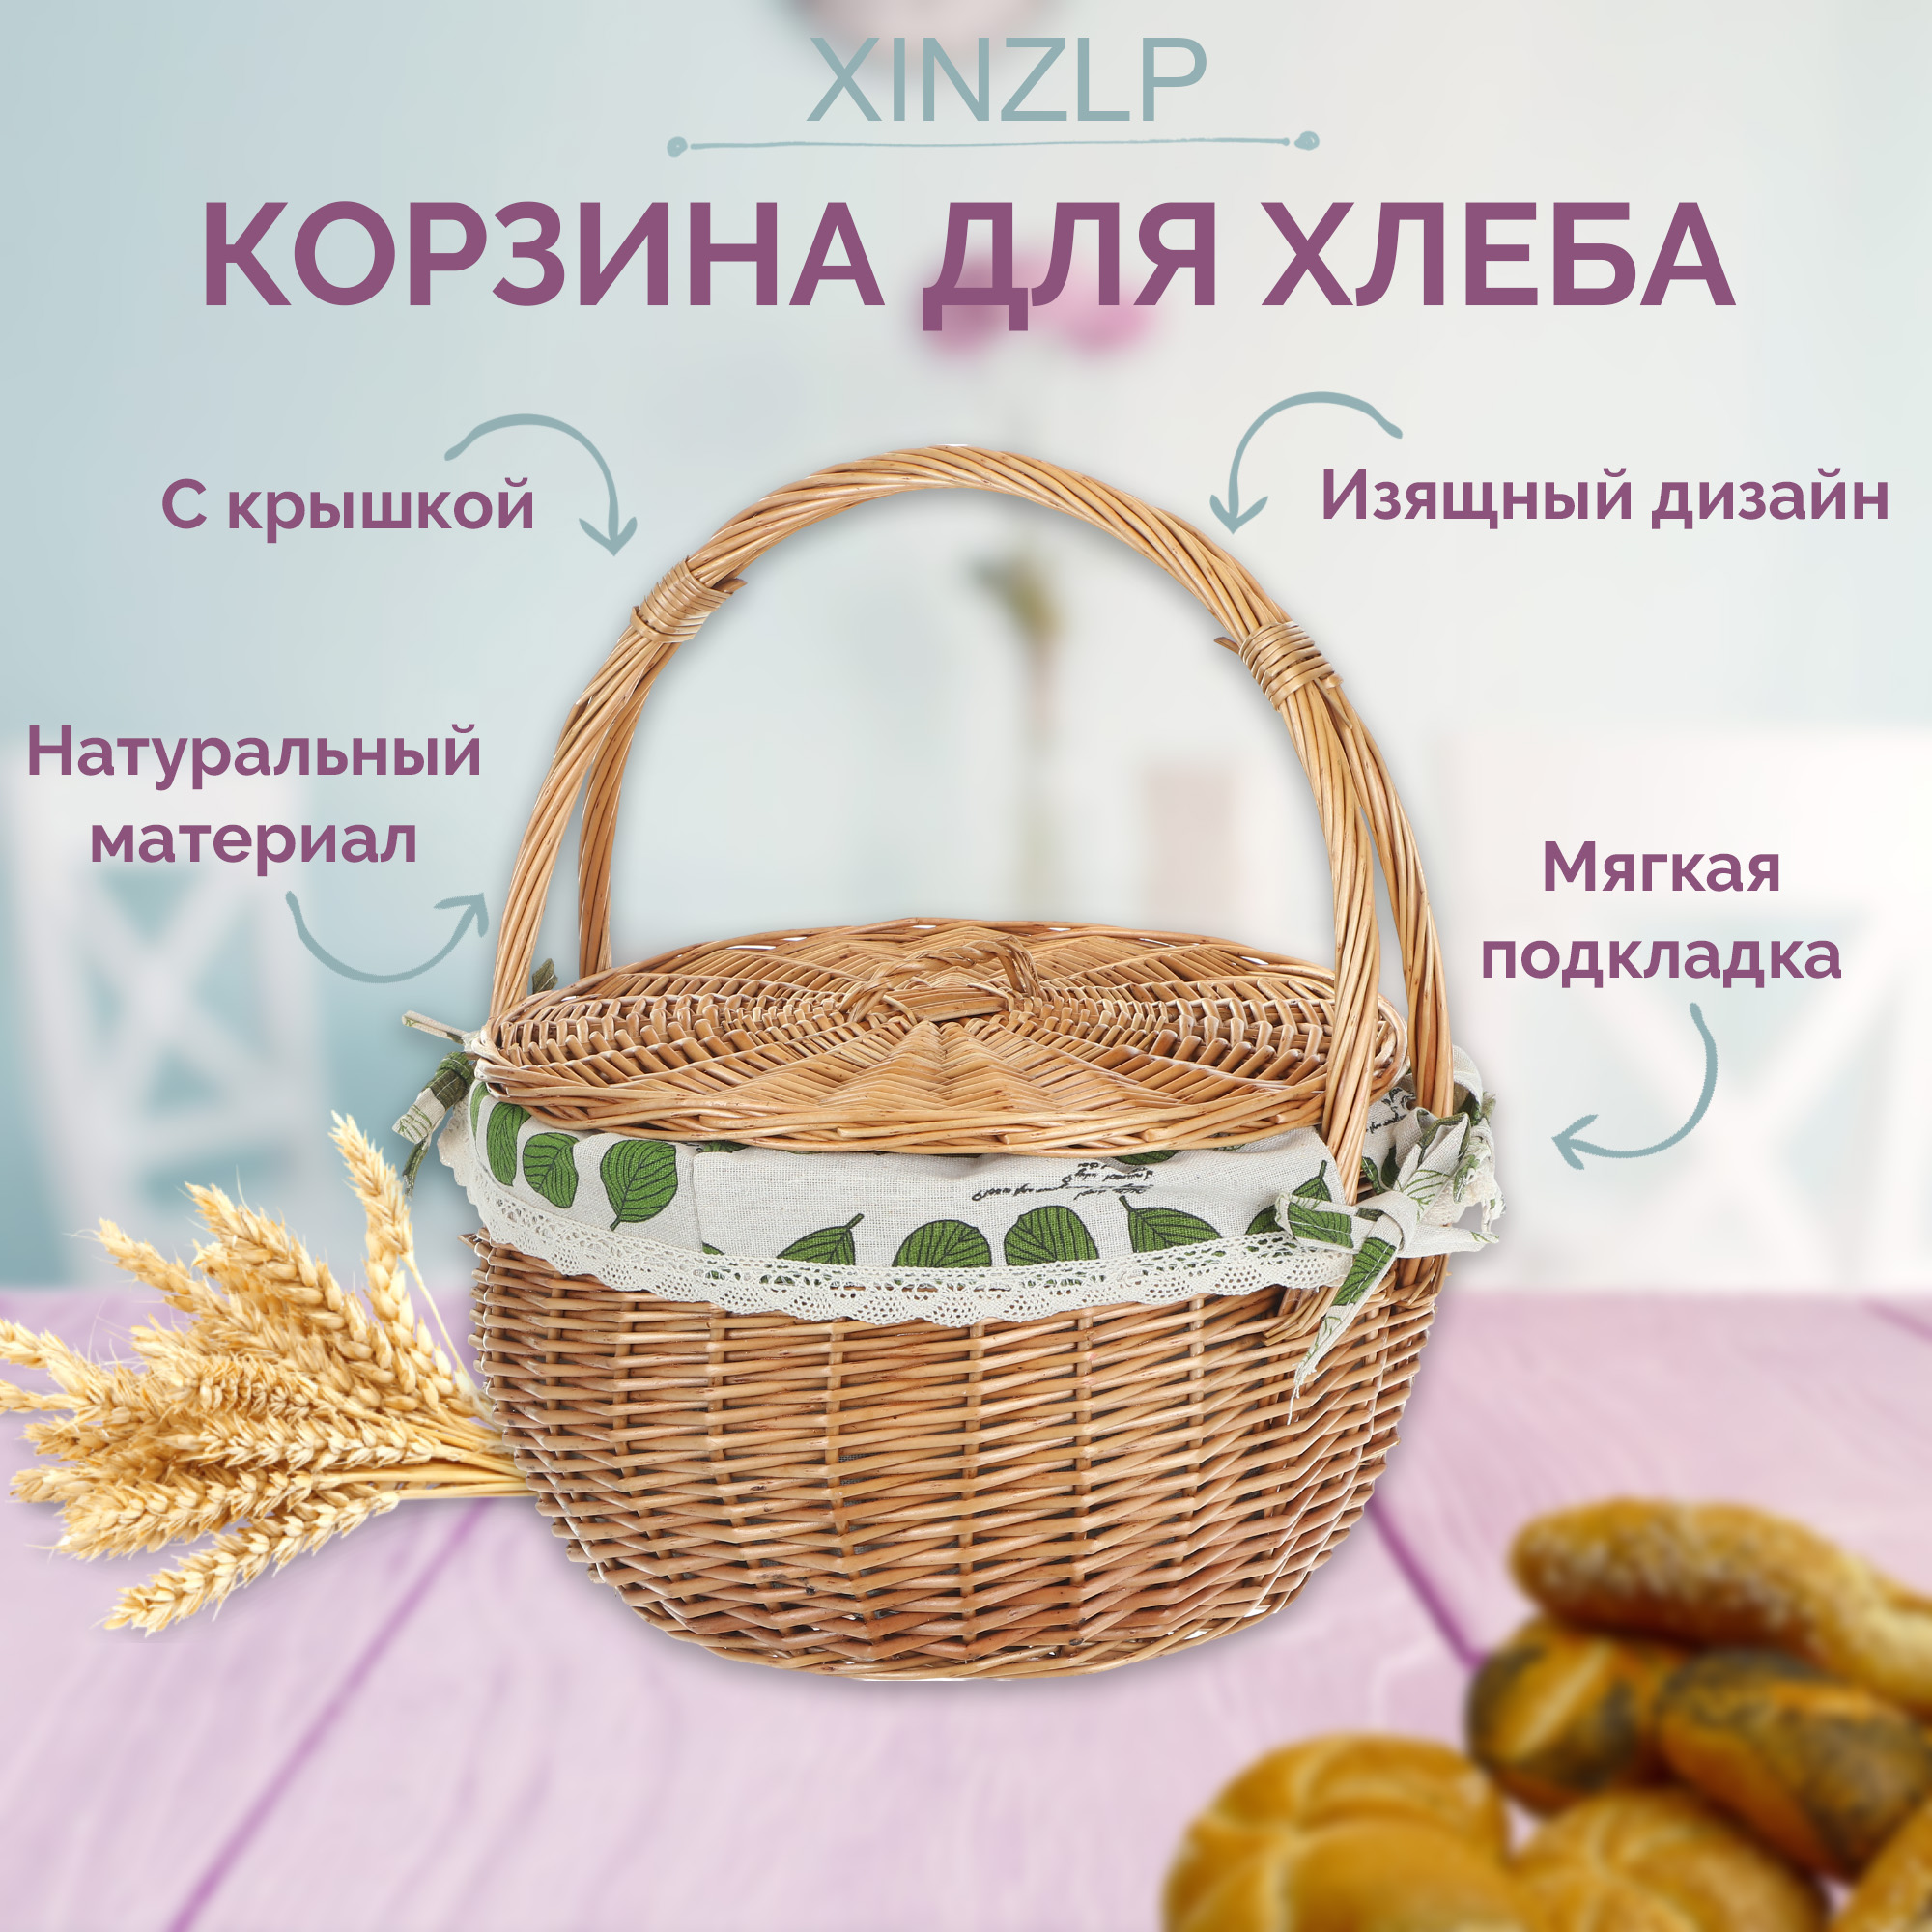 фото Корзина сервировочная для хлеба xinzlp с крышкой 31 см